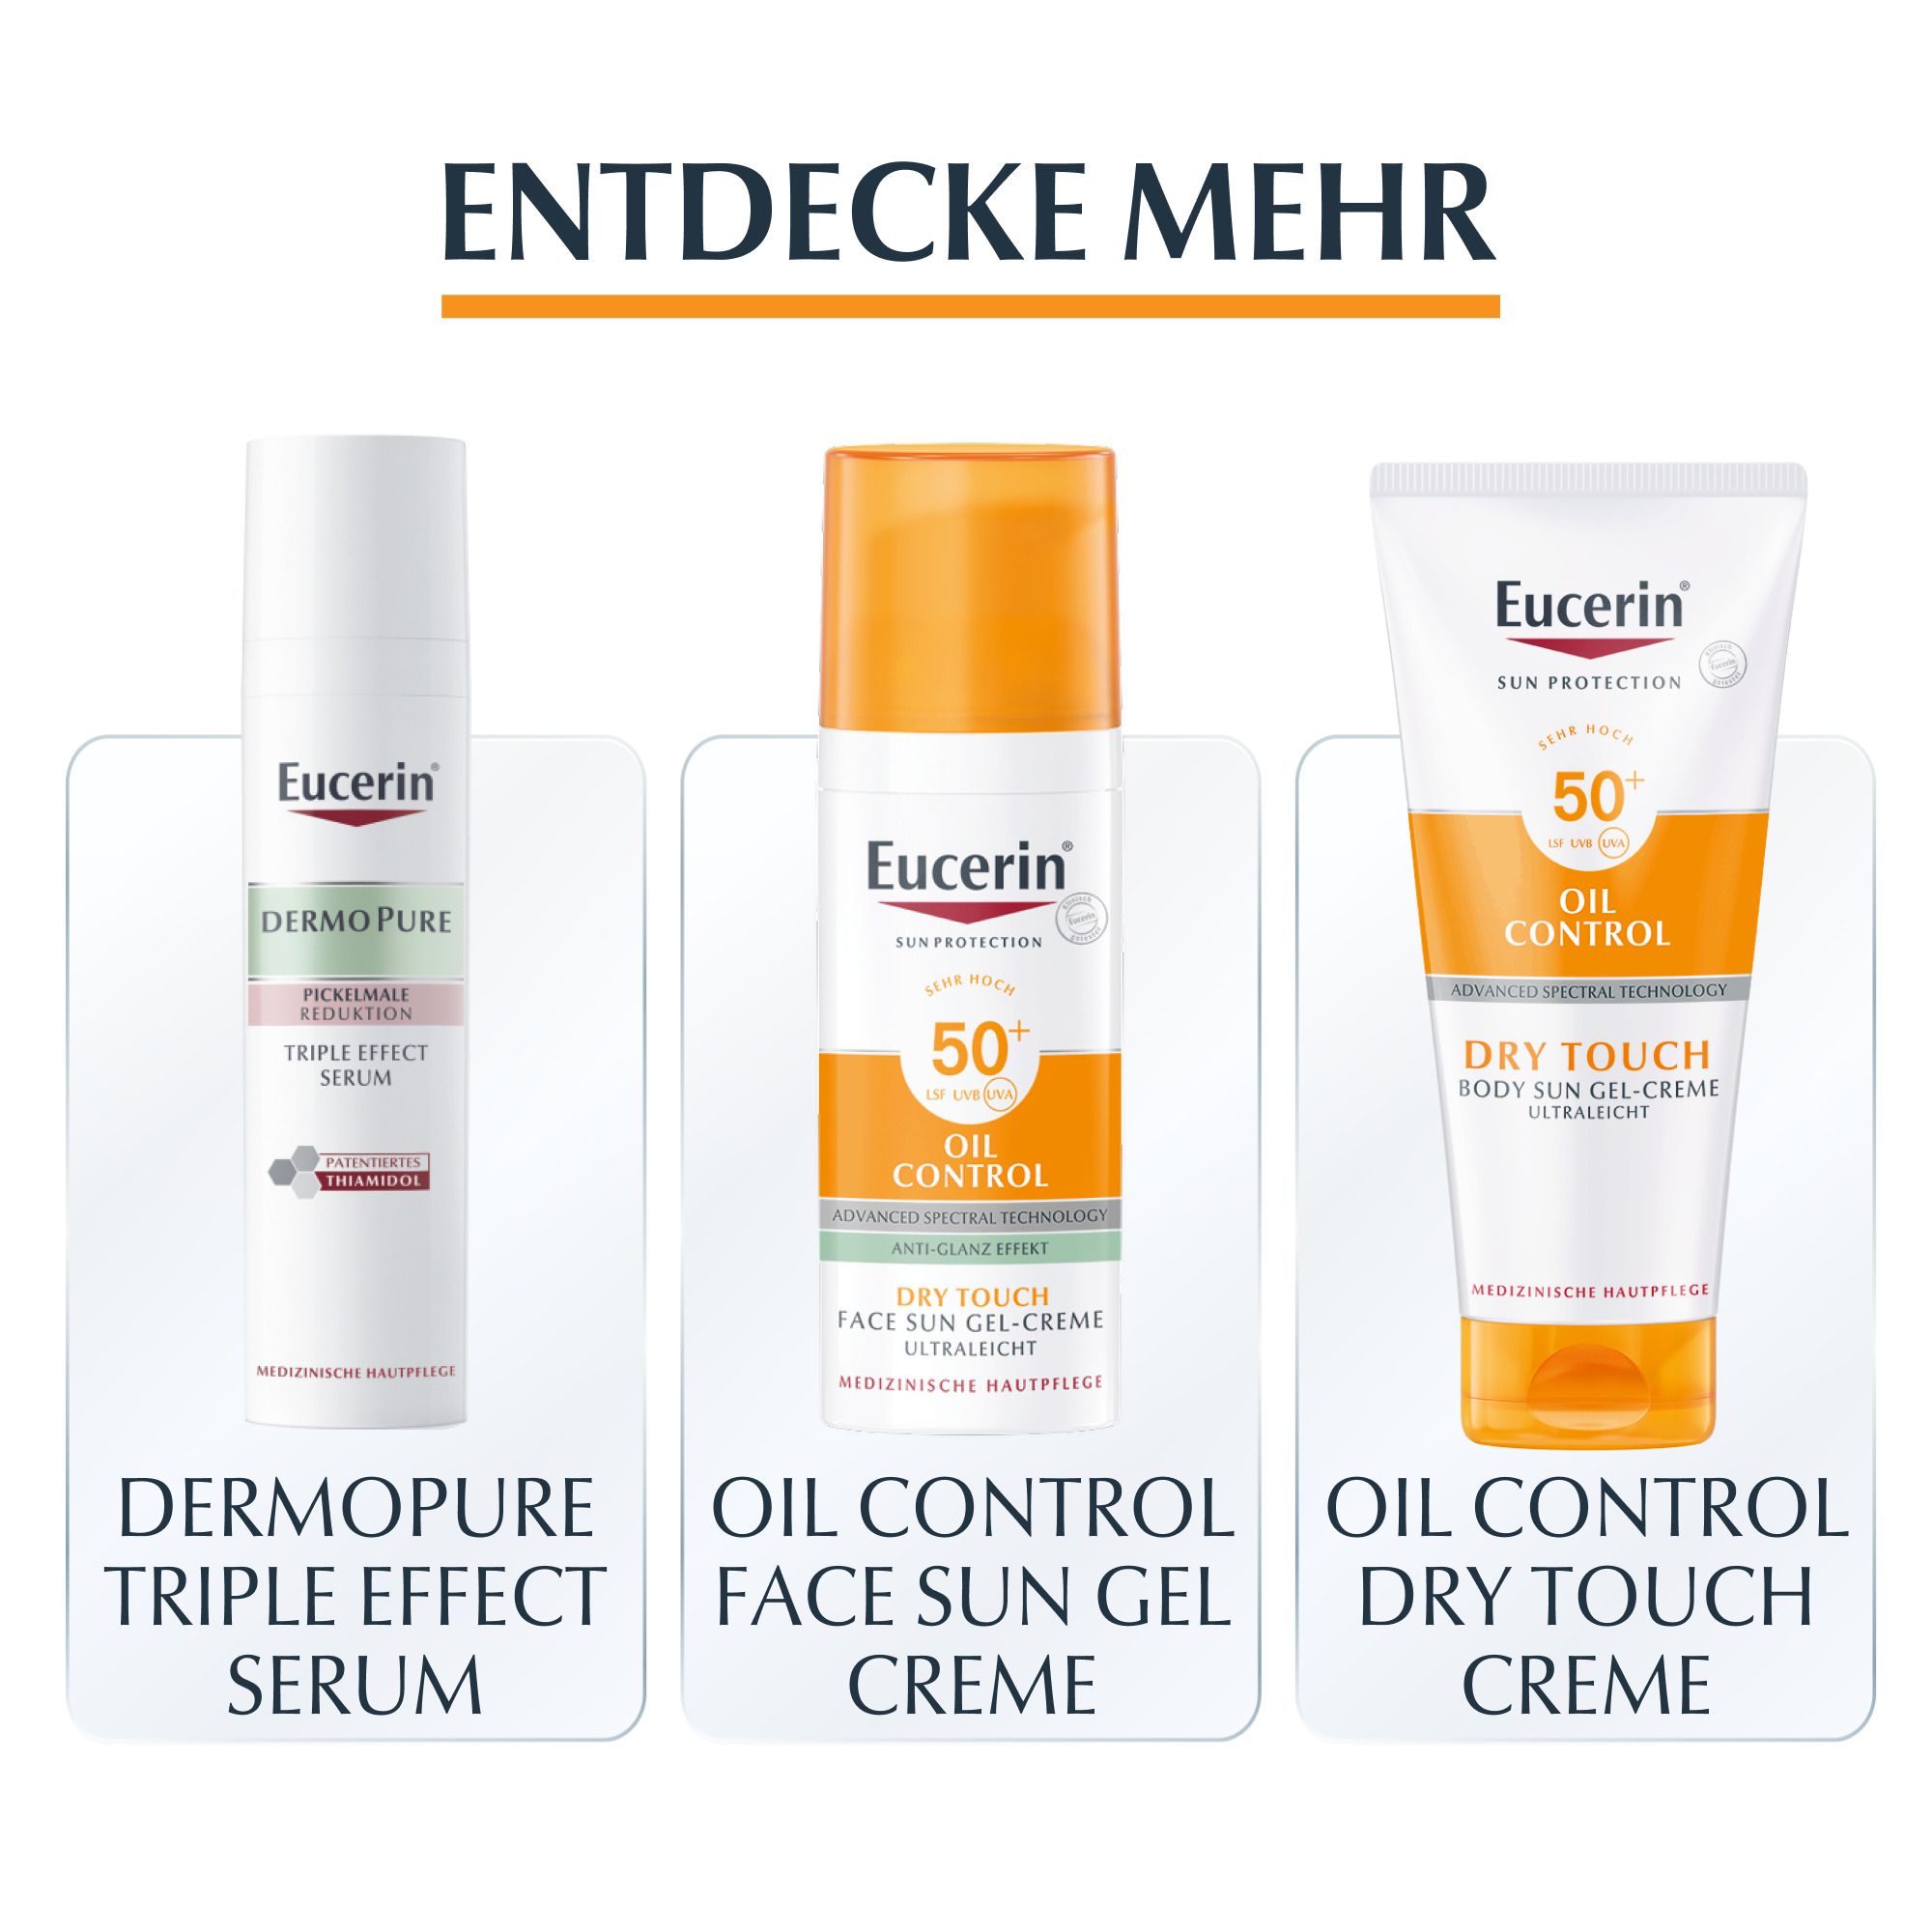 Eucerin® Oil Control Tinted Face Sun Gel-Creme mit LSF 50+ – getönter Sonnenschutz für fettige und unreine Haut – Hell